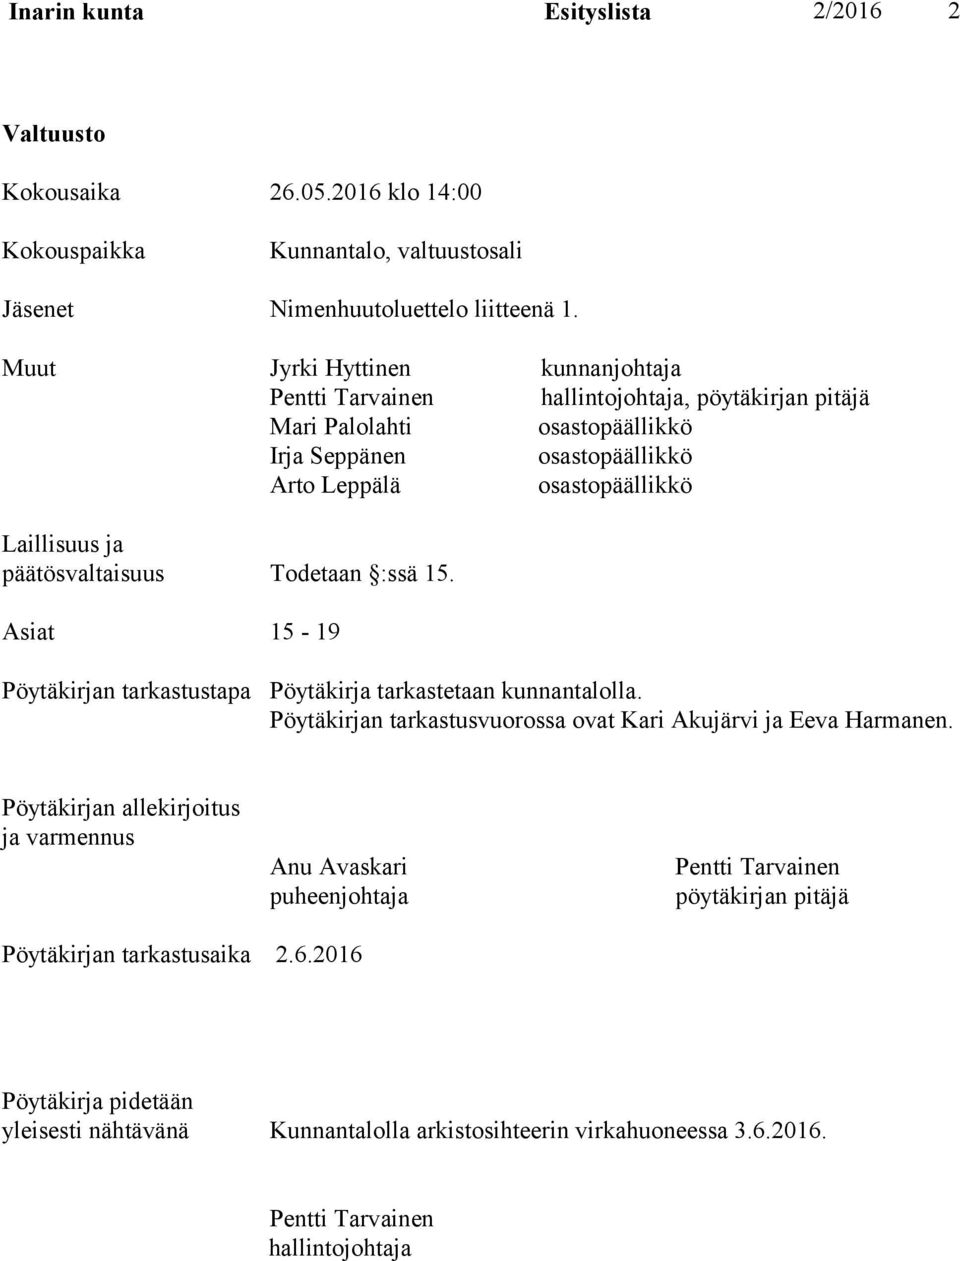 päätösvaltaisuus Todetaan :ssä 15. Asiat 15-19 Pöytäkirjan tarkastustapa Pöytäkirja tarkastetaan kunnantalolla. Pöytäkirjan tarkastusvuorossa ovat Kari Akujärvi ja Eeva Harmanen.